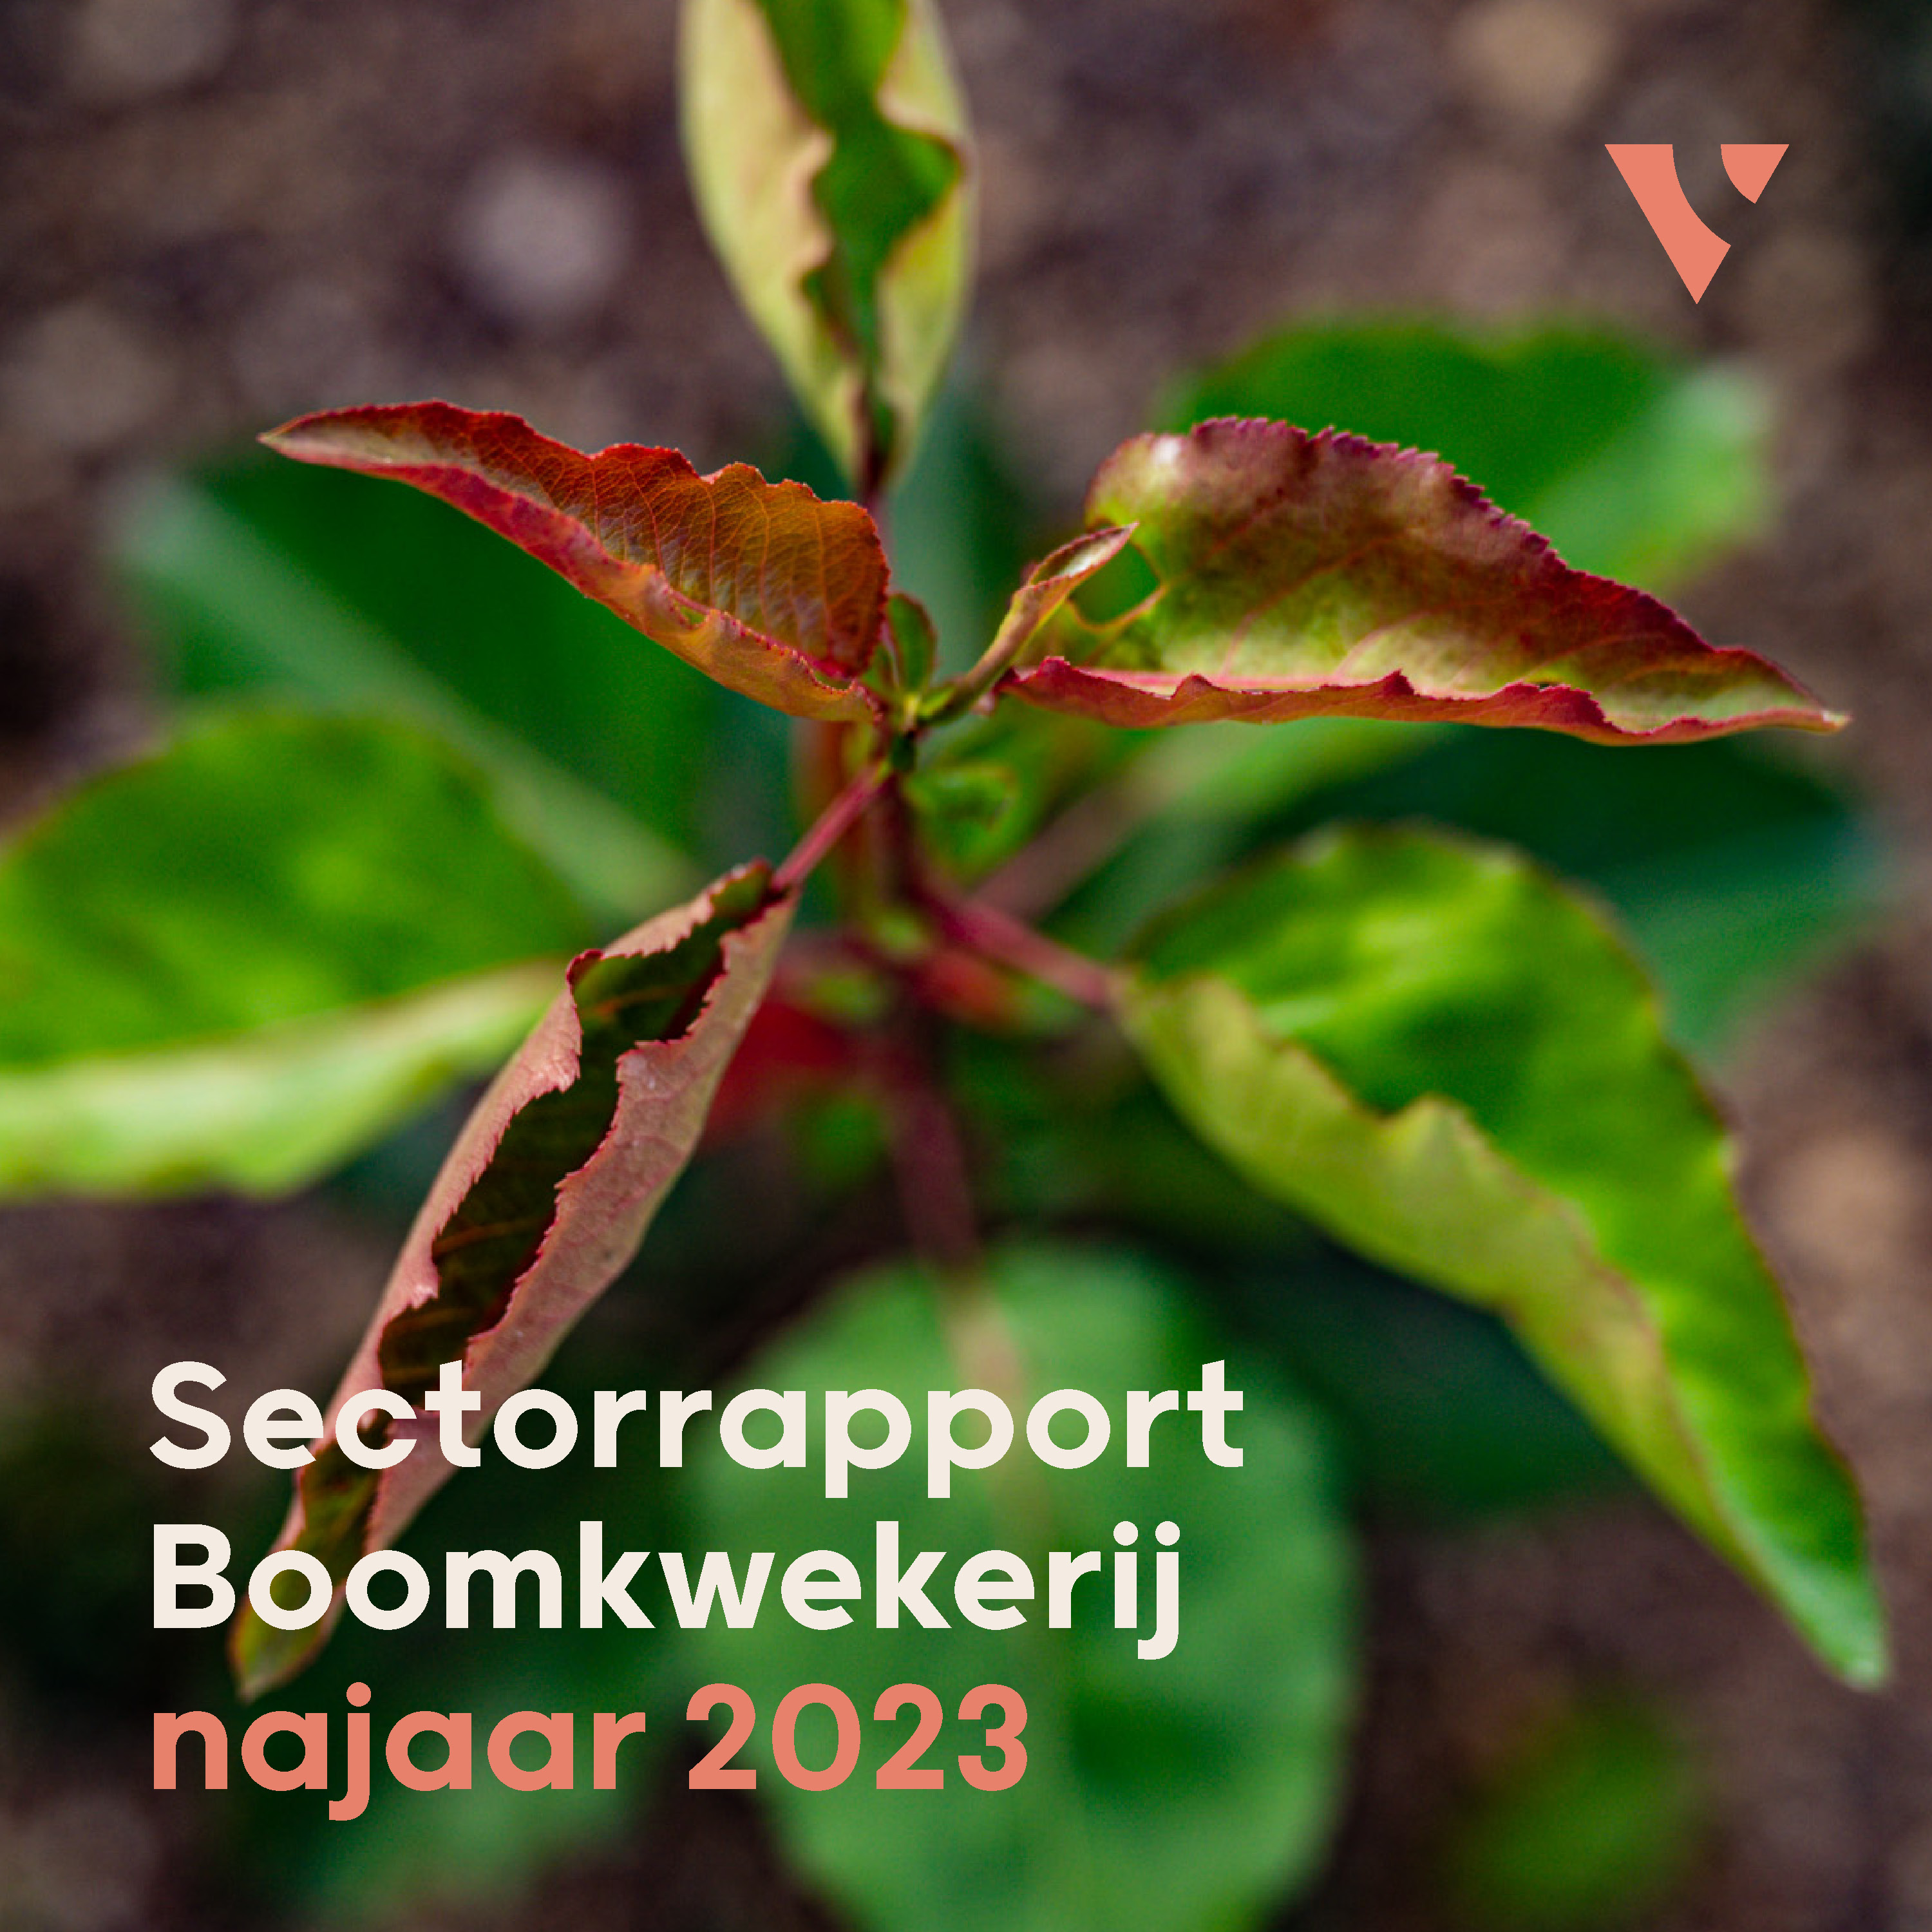 Sectorrapport boomkwekerij najaar 2023